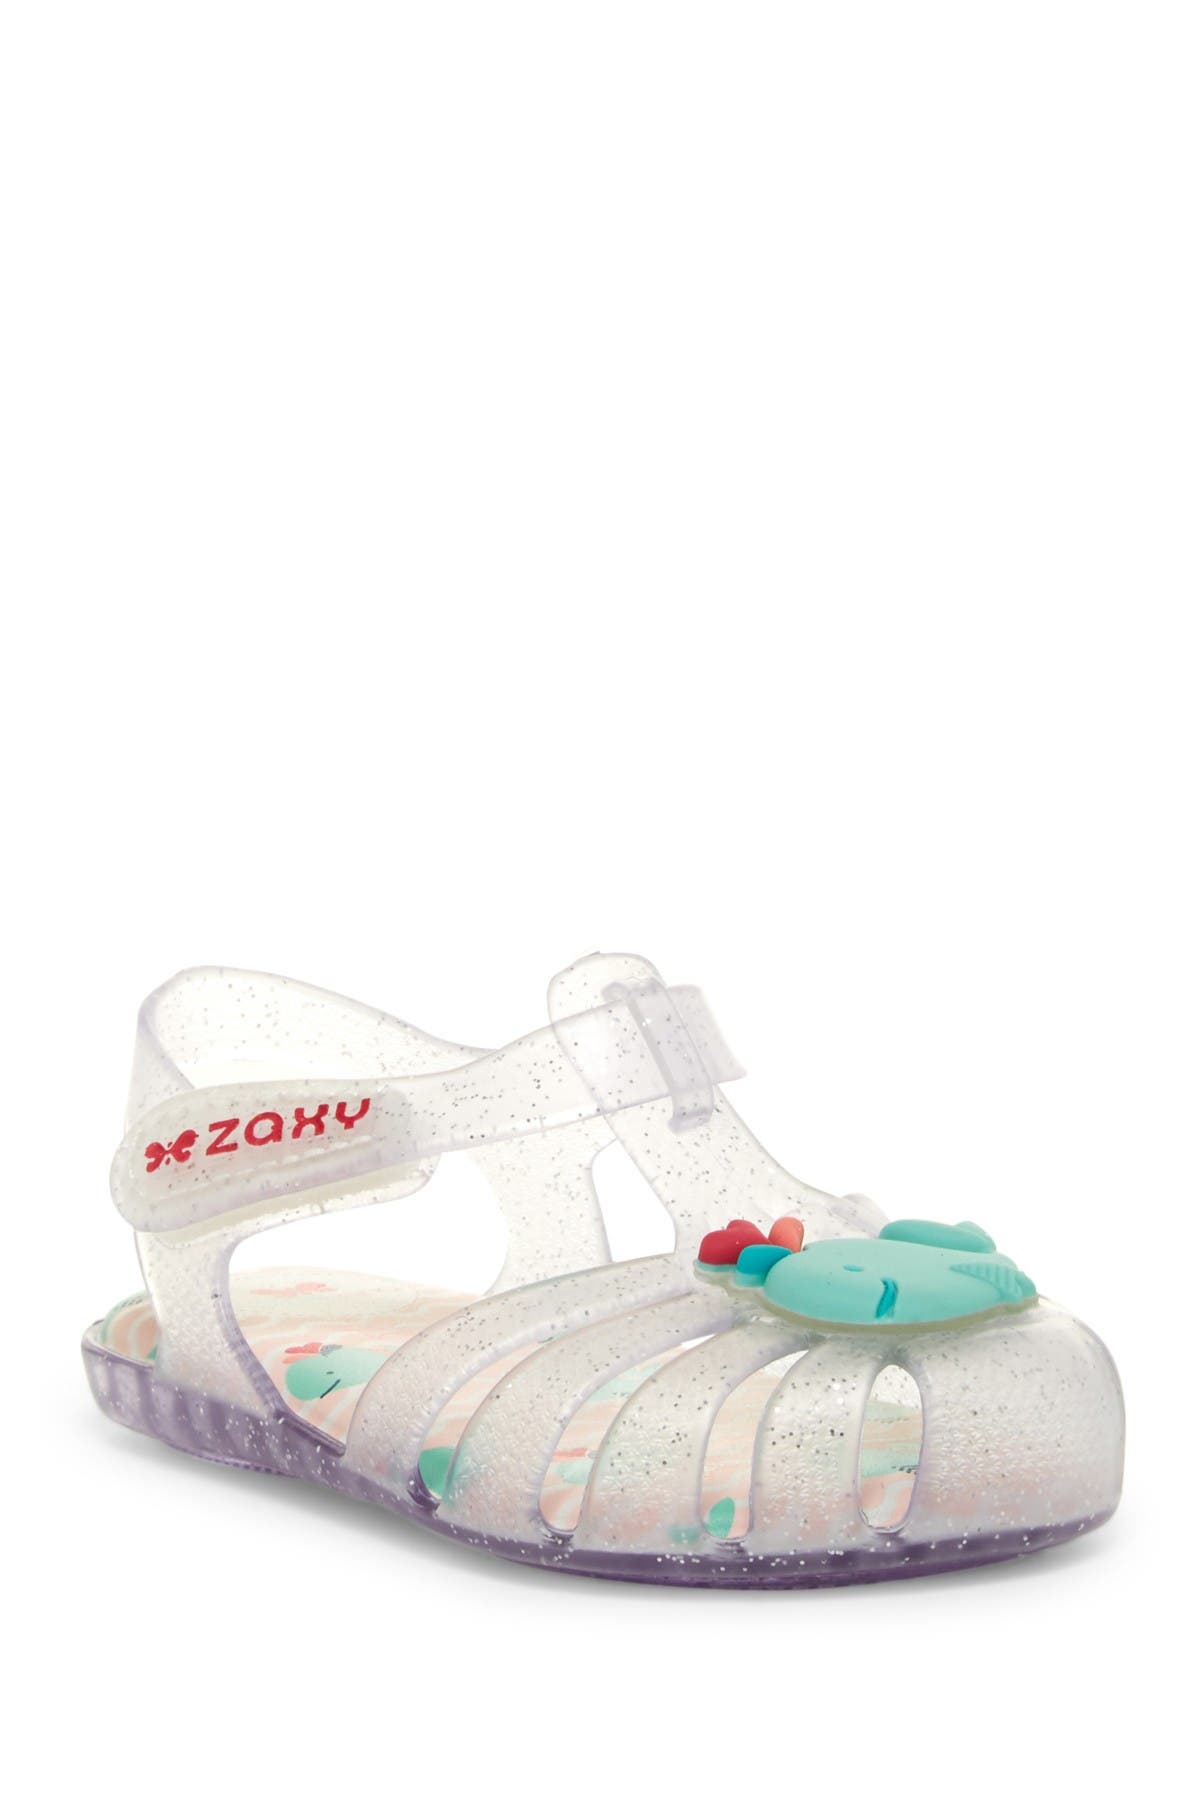 zaxy jelly sandals